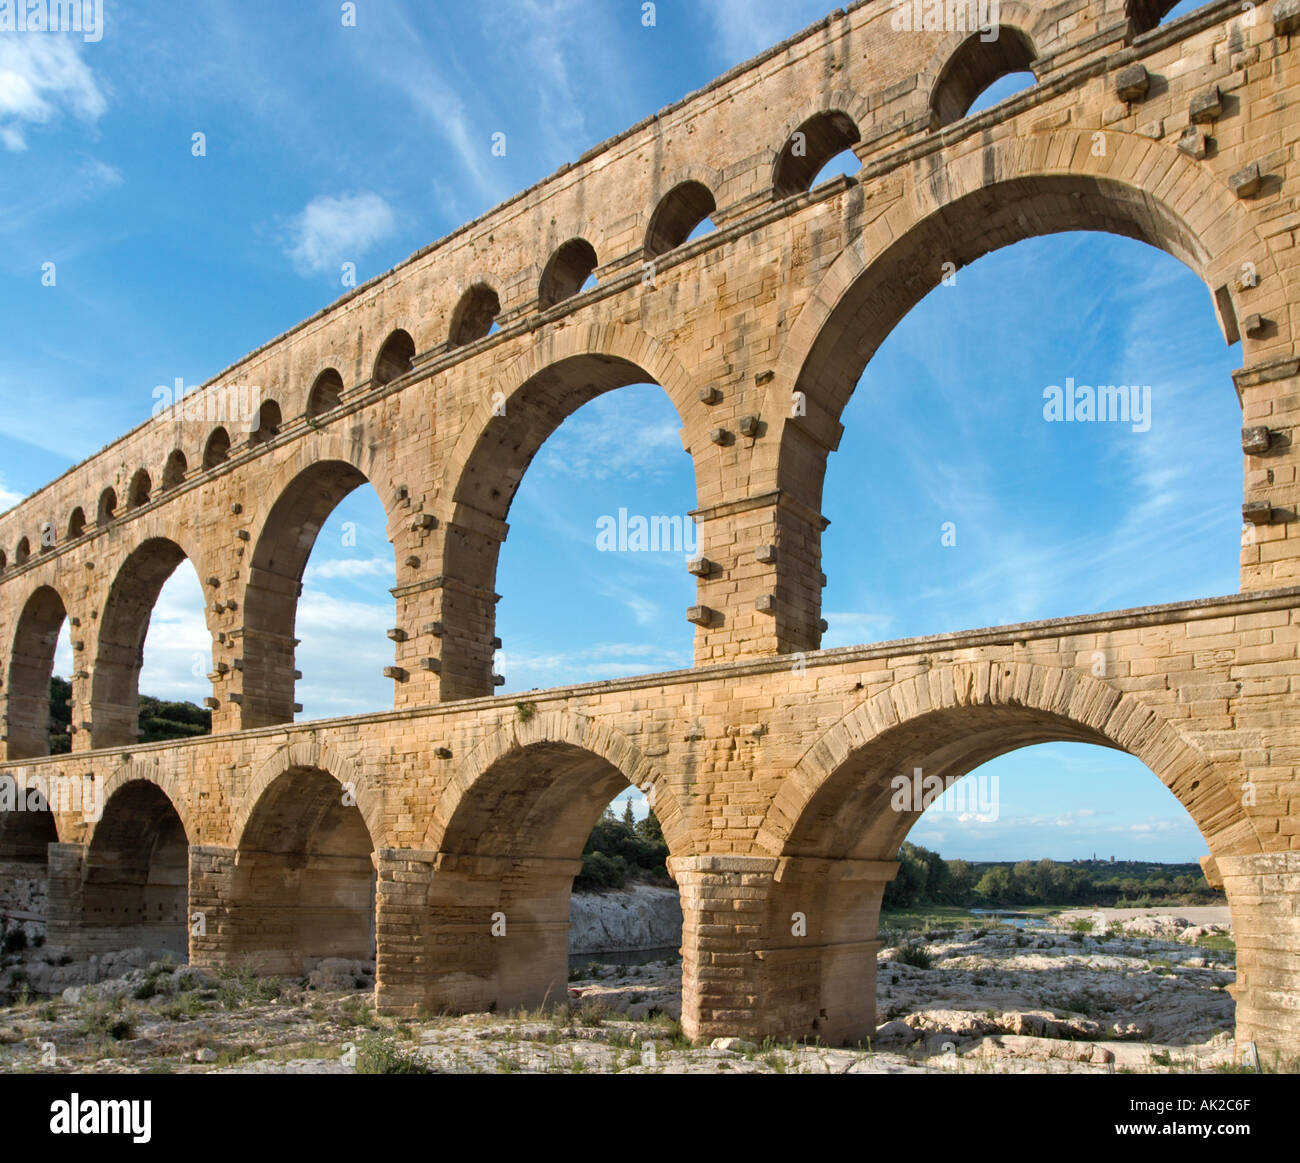 Pont du Gard römische Aquädukt über die Gard River, Languedoc, Frankreich Stockfoto